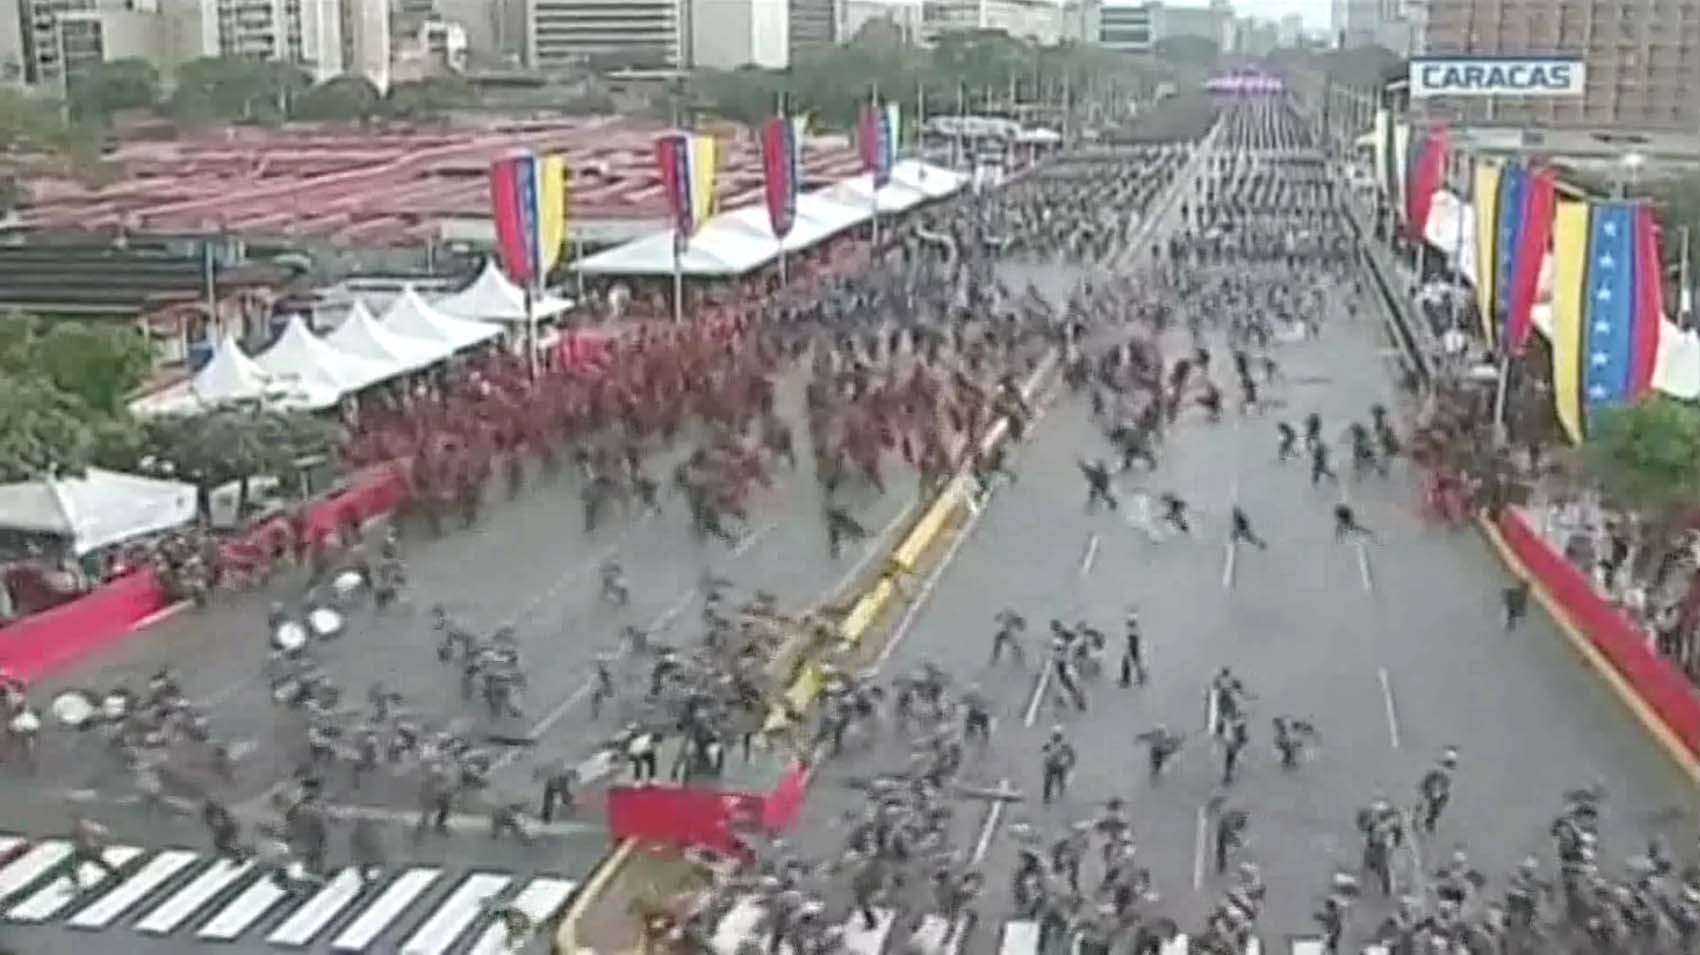 Vente Venezuela sobre incidente durante acto de Maduro: La cobardía y la mentira expuestas en plena avenida Bolívar